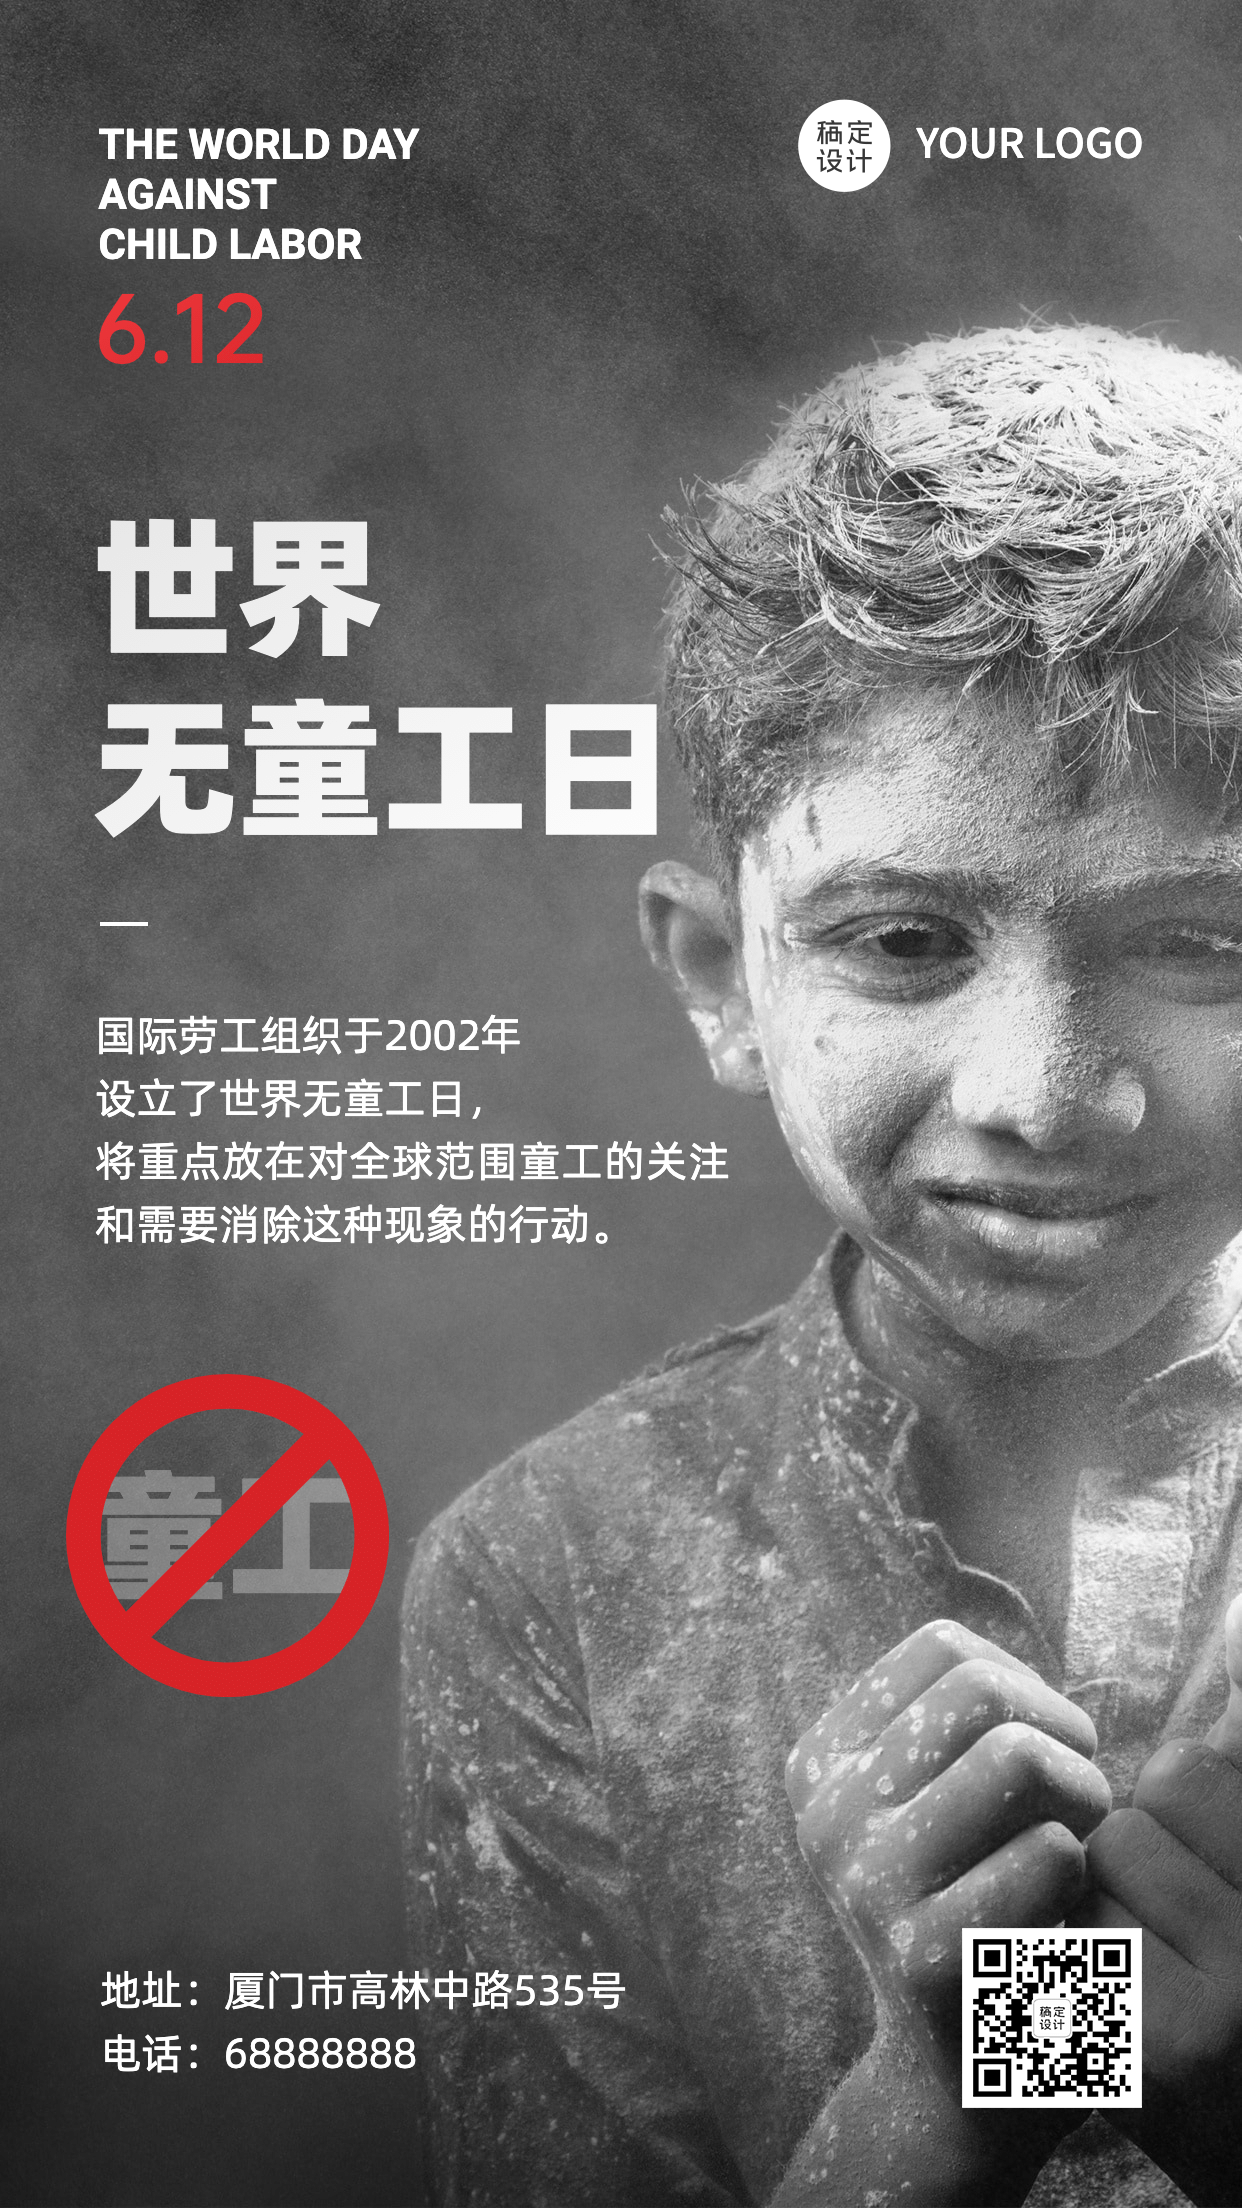 612世界无童工日公益宣传实景手机海报预览效果